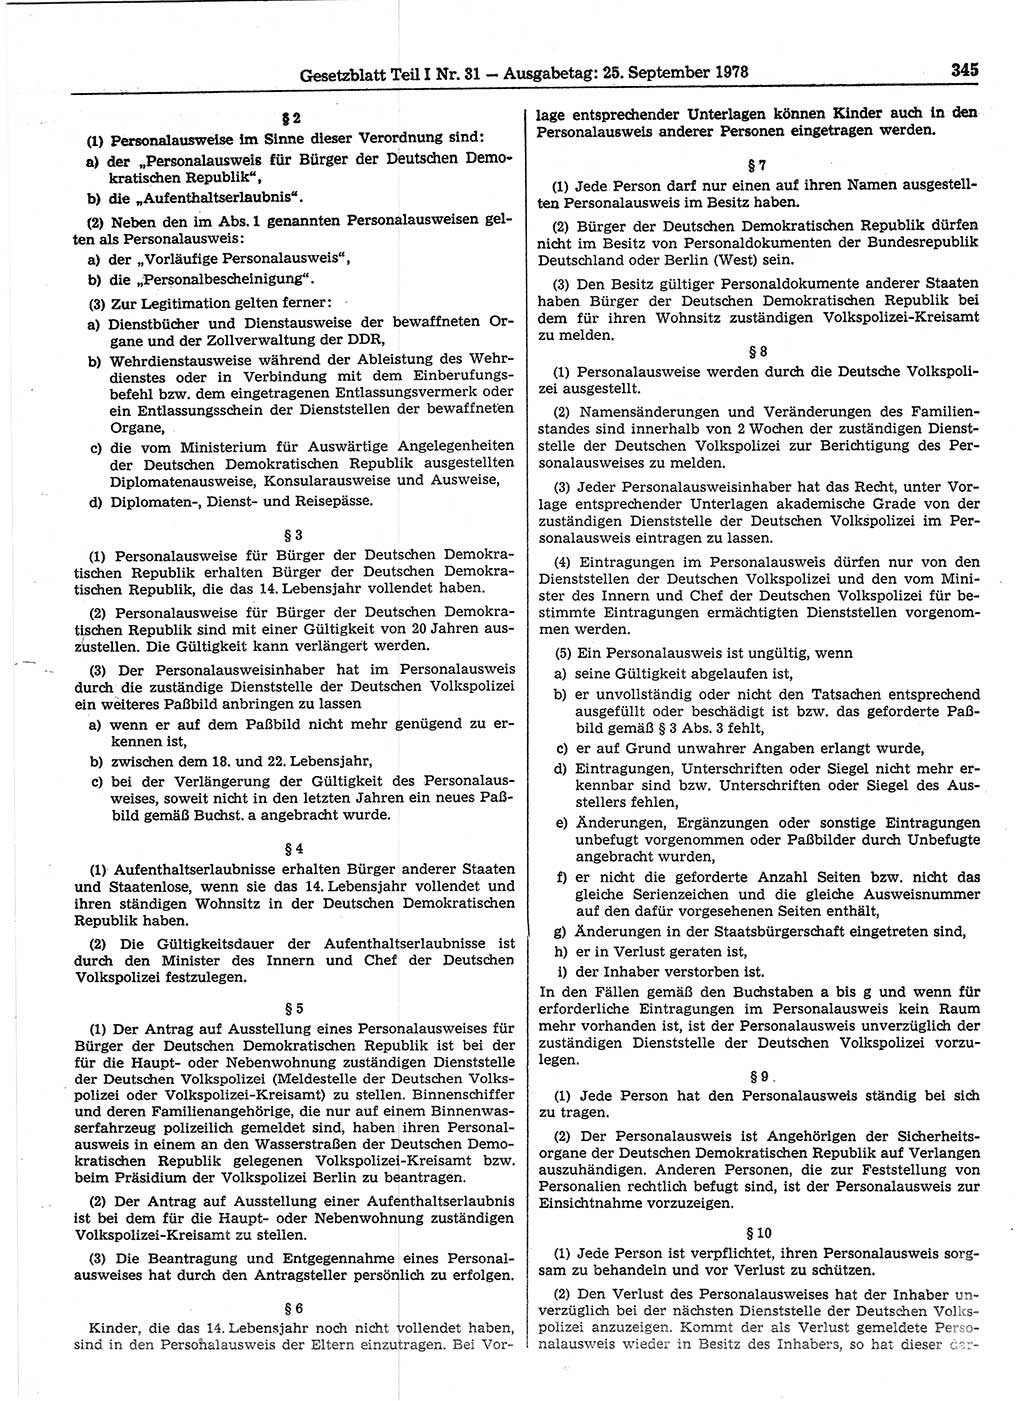 Gesetzblatt (GBl.) der Deutschen Demokratischen Republik (DDR) Teil Ⅰ 1978, Seite 345 (GBl. DDR Ⅰ 1978, S. 345)